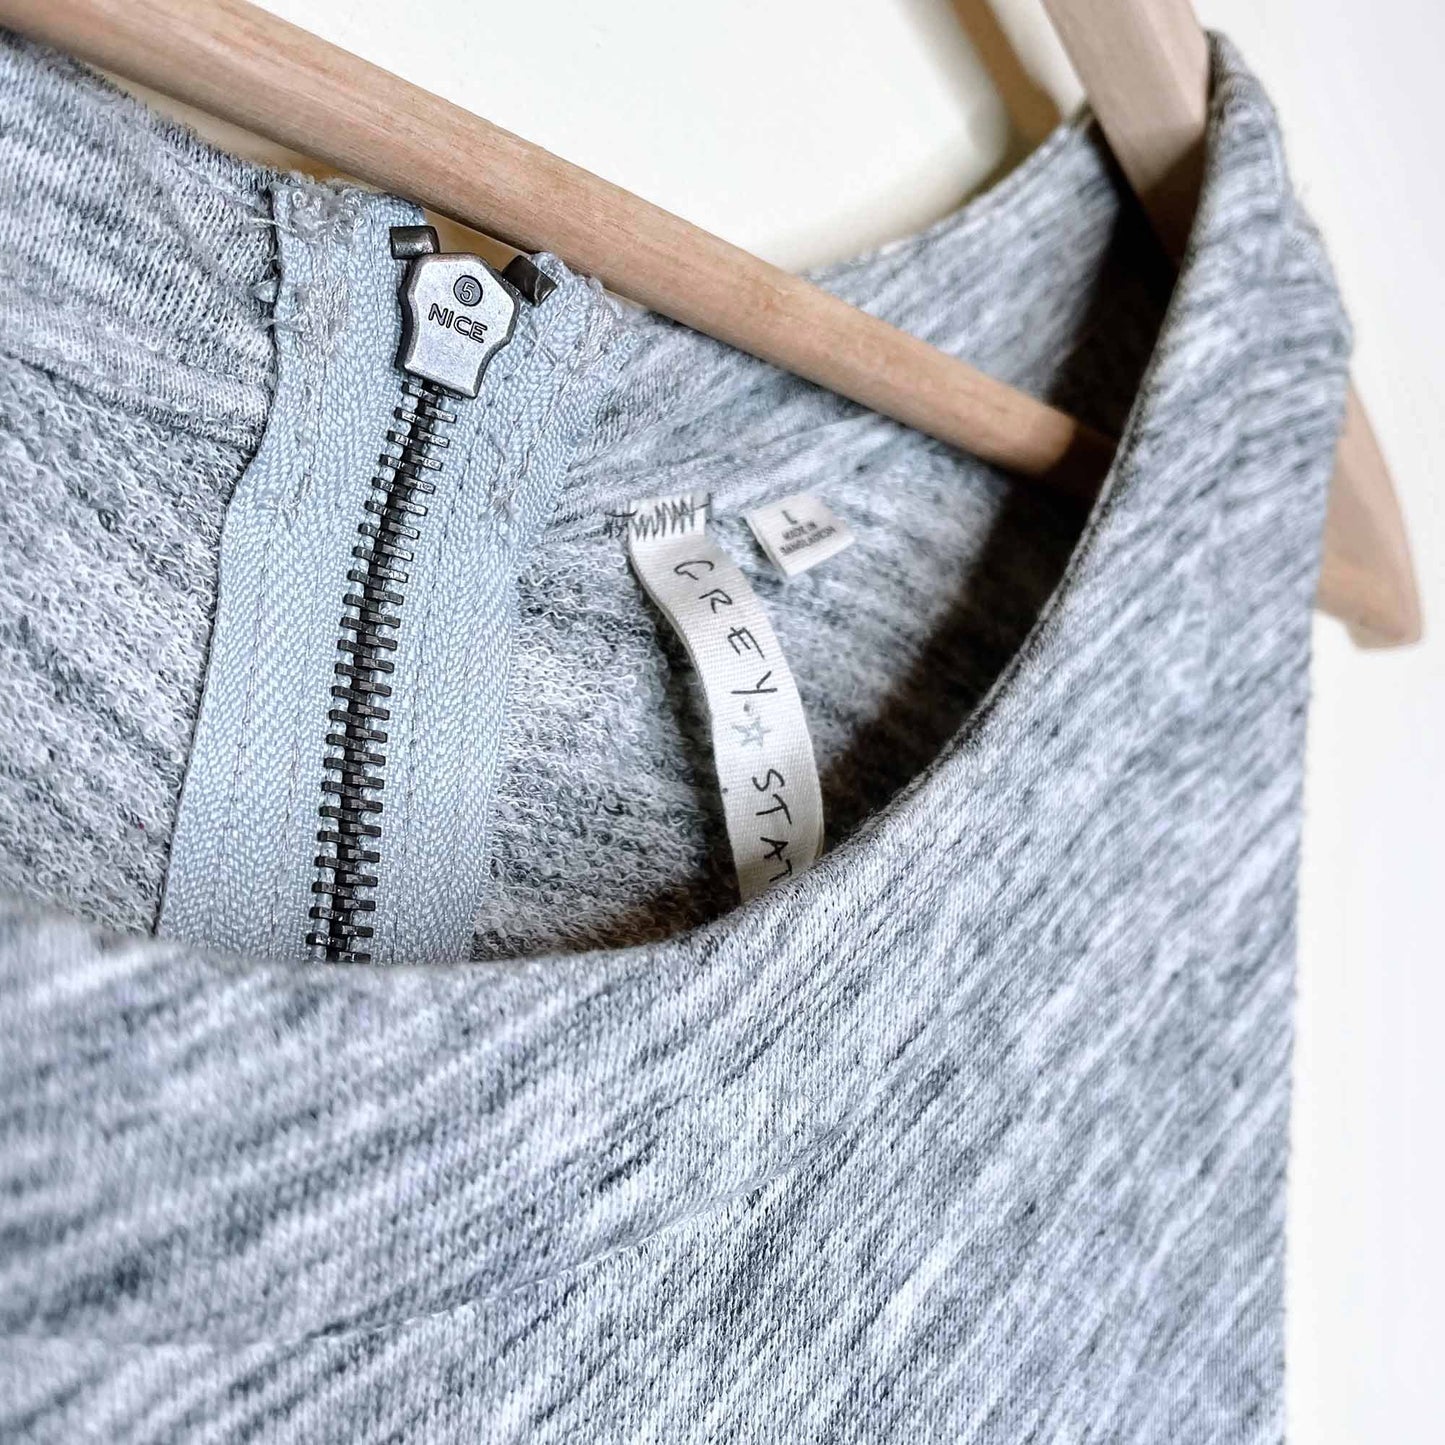 grey state apparel heather melange high neck summer dress - size large